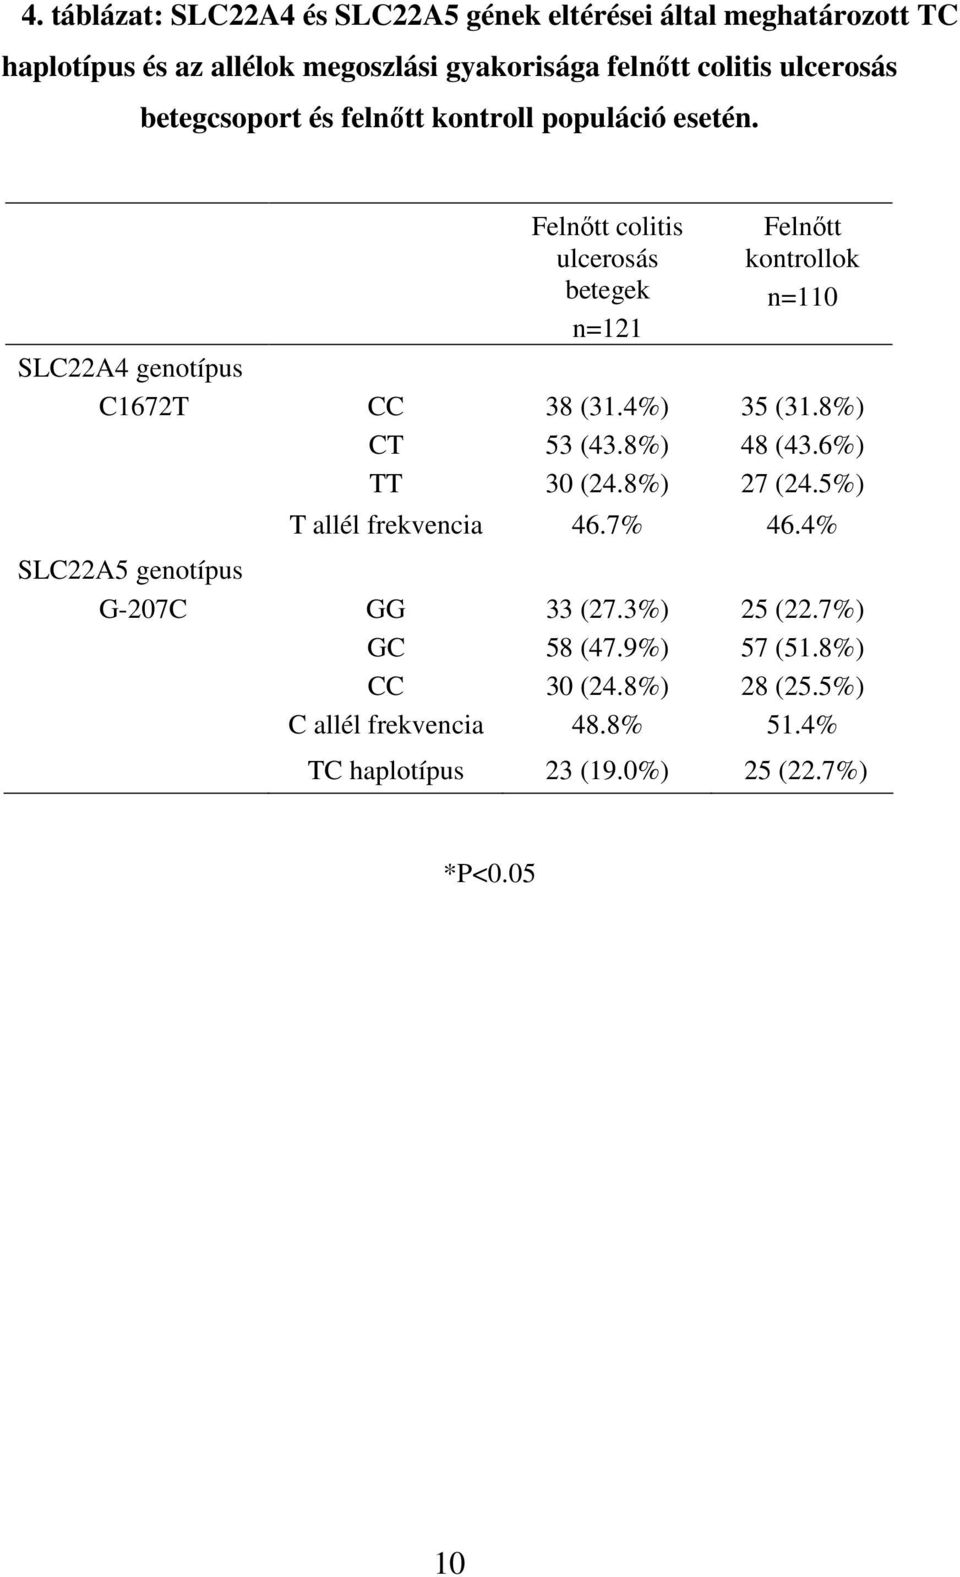 SLC22A4 genotípus C1672T SLC22A5 genotípus G-207C CT TT Felnıtt colitis ulcerosás betegek n=121 38 (31.4%) 53 (43.8%) 30 (24.